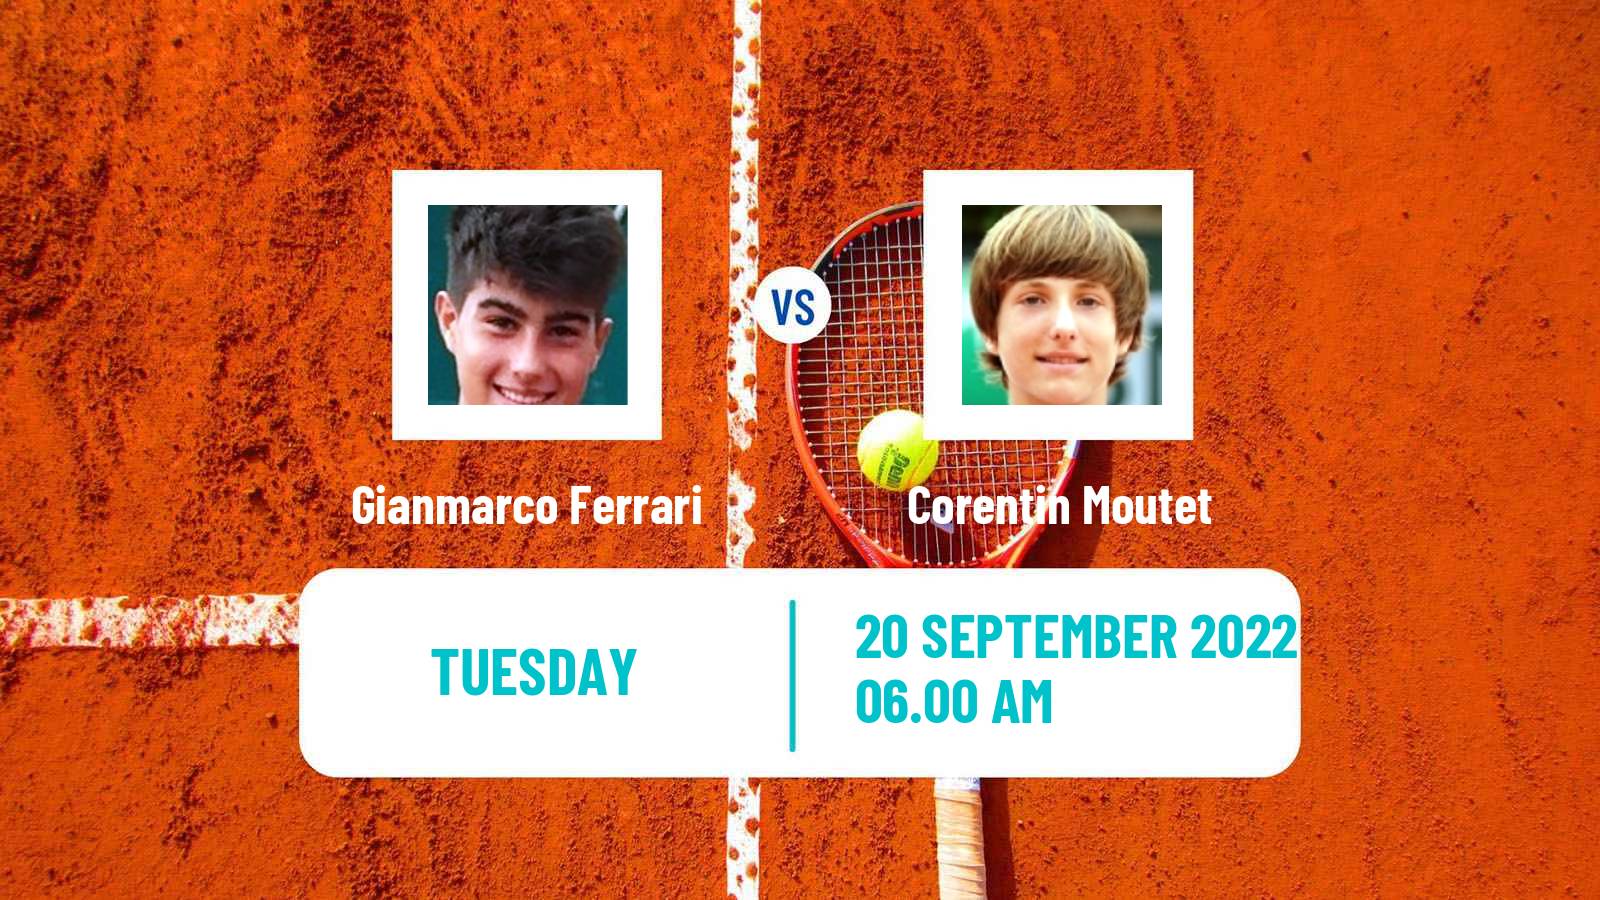 Tennis ATP Challenger Gianmarco Ferrari - Corentin Moutet